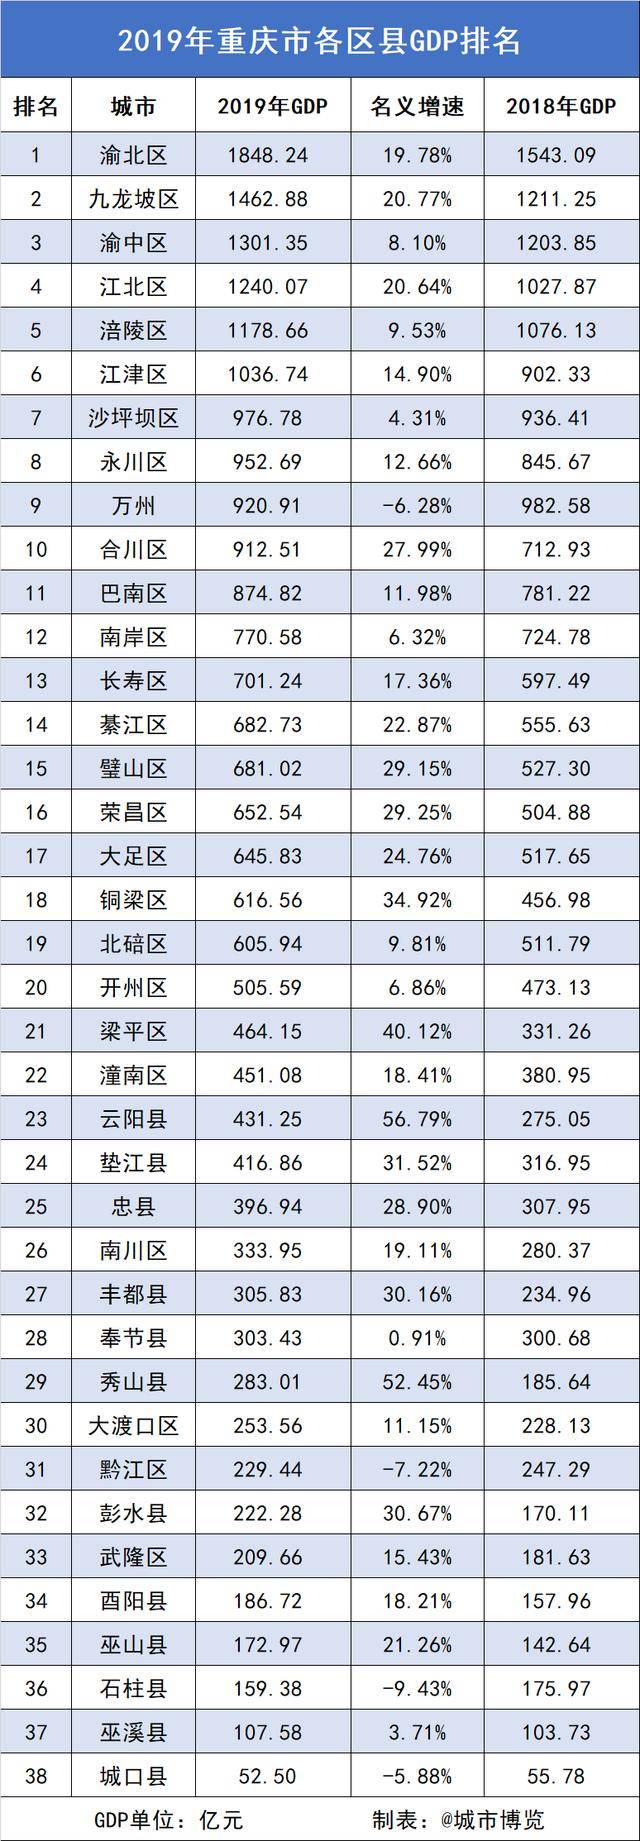 原创2019年重庆各区县gdp排名:渝北表现亮眼